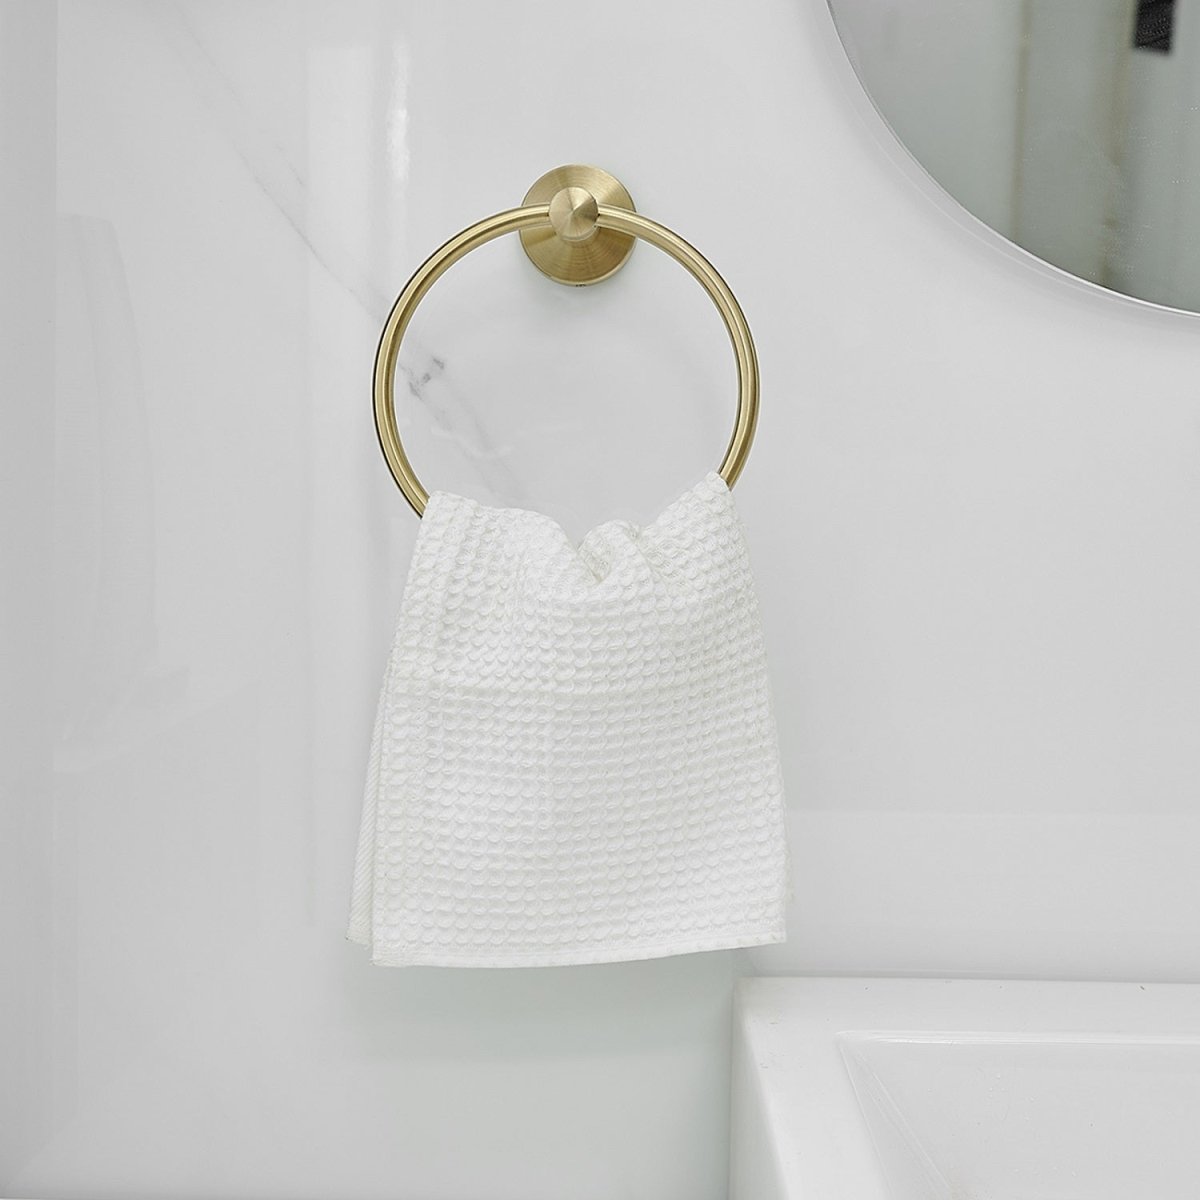 5 PCS Towel Bar Towel Hook Paper Holder Towel Ring Set Gold - buyfaucet.com